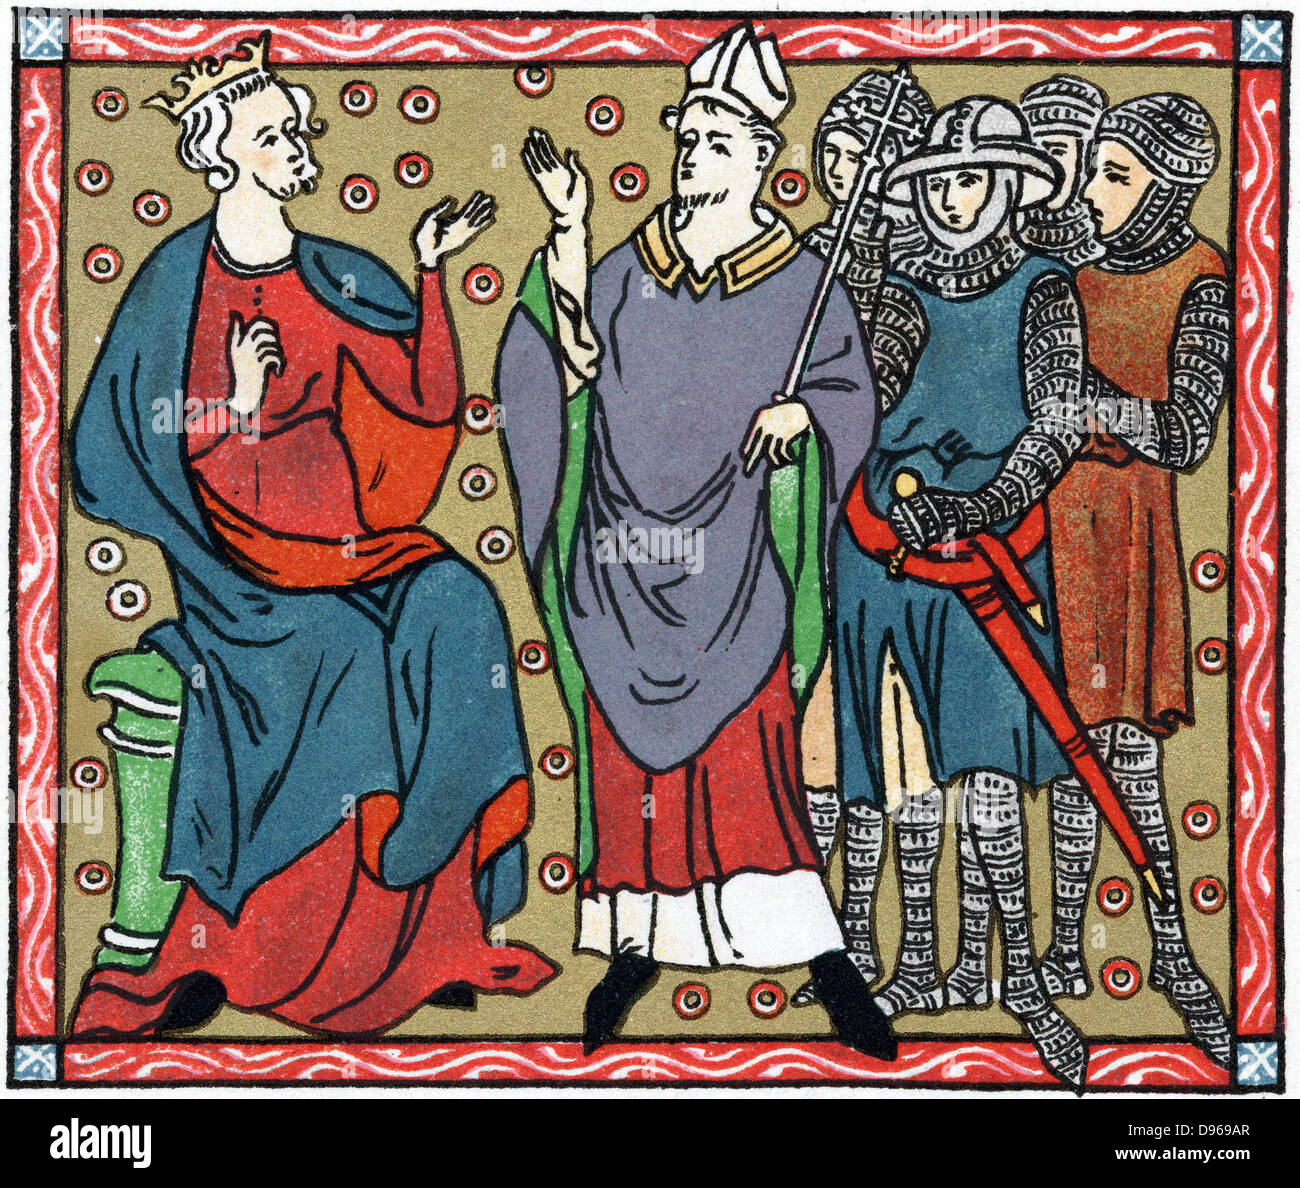 Henri II (1133-1189) Roi d'Angleterre à partir de 1154 : Henry conteste avec un Thomas Becket (1118-1170) archevêque de Canterbury. Les chiffres sont envoyés par quatre chevaliers qui ont assassiné Becket. Chromolithographie après manuscrit médiéval. Banque D'Images